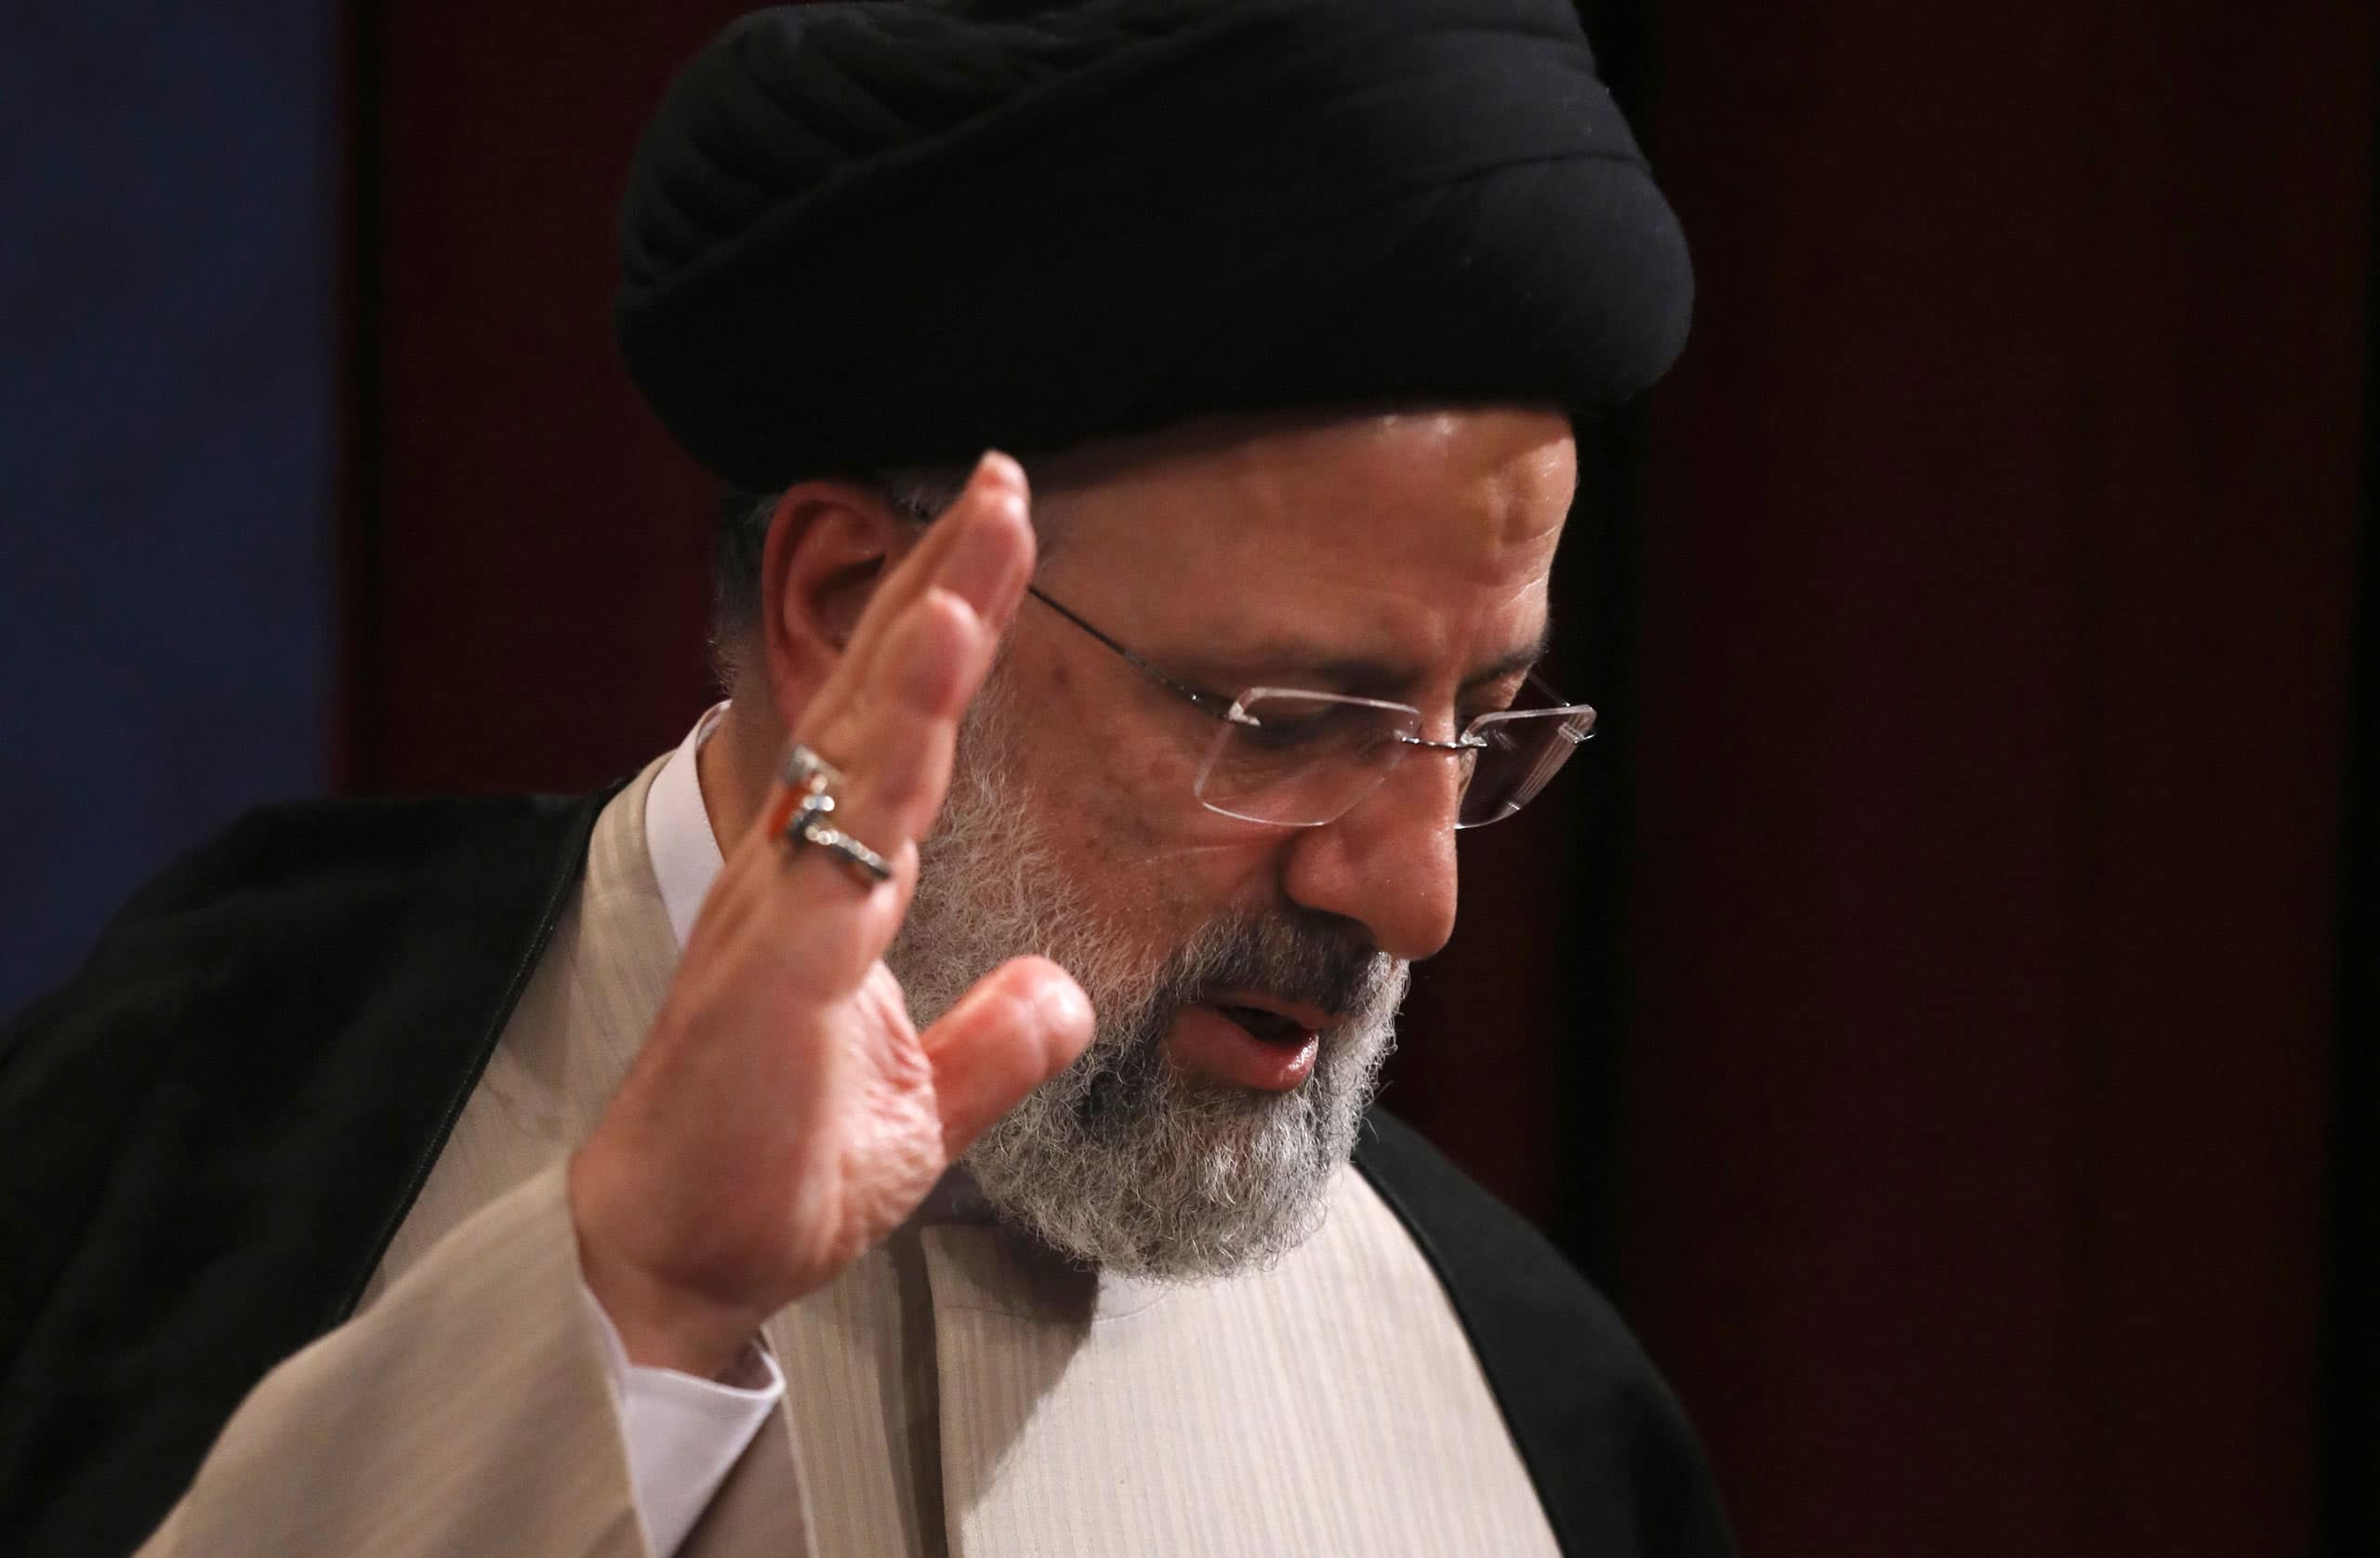 اسباب ترجح فشل المحادثات حول الاتفاق النووي الإيراني watanserb.com